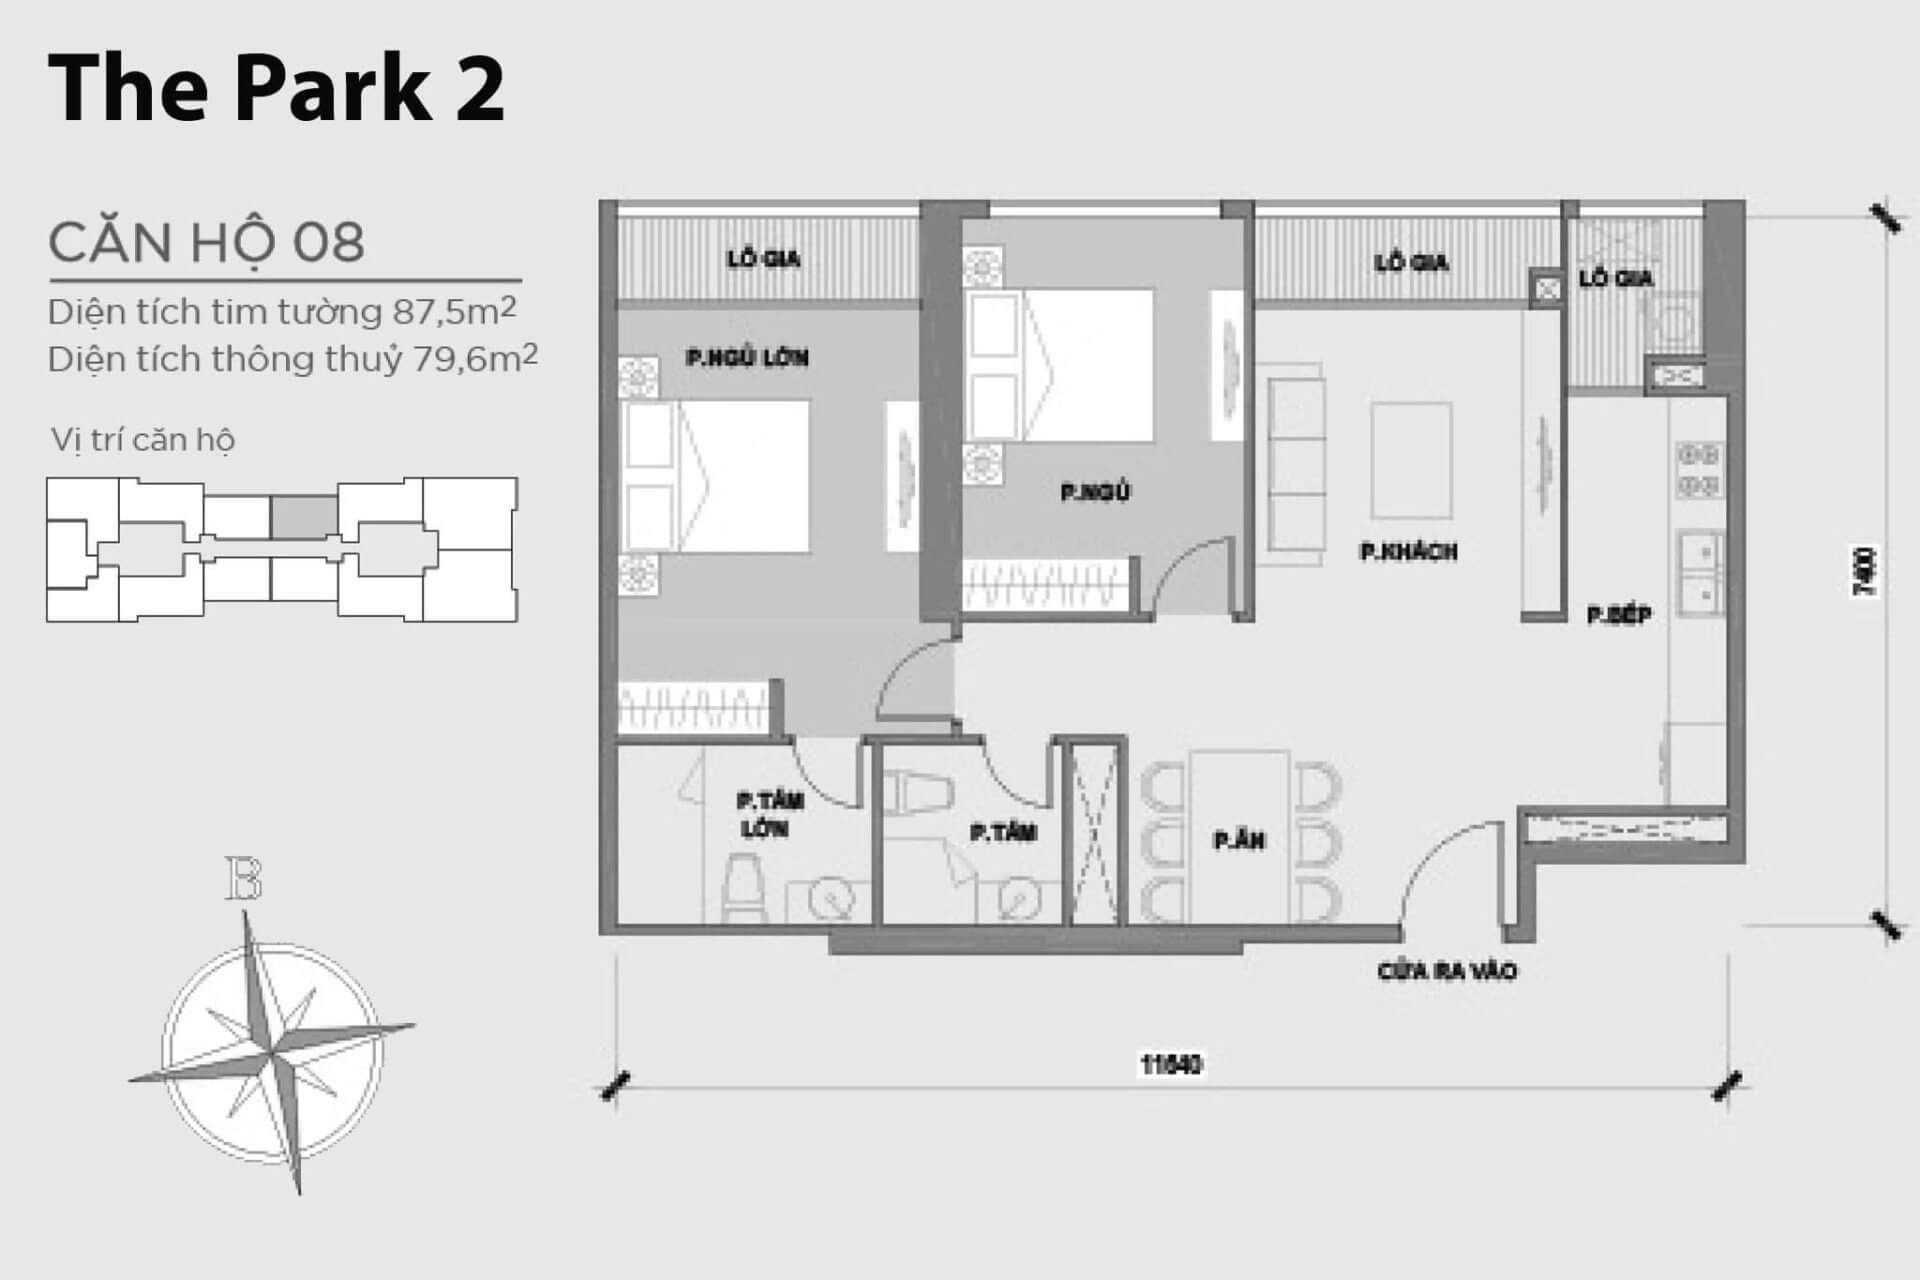 mặt bằng layout căn hộ số 08 Park 2 Vinhomes Central Park